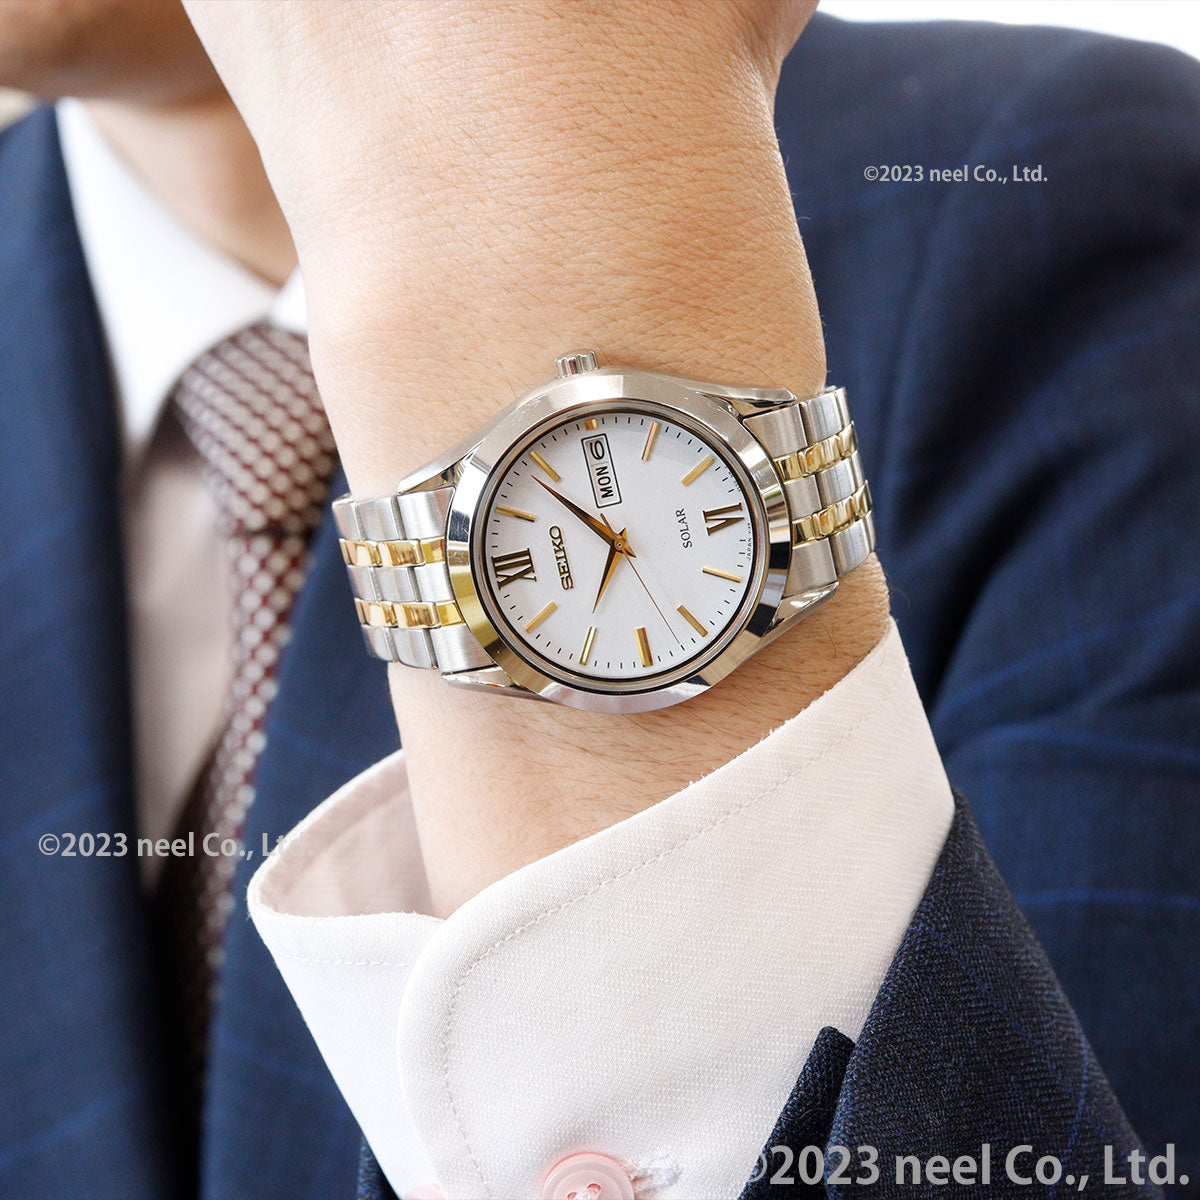 セイコー セレクション SEIKO SELECTION ソーラー 腕時計 メンズ レディース ペアモデル SBPX085 STPX033